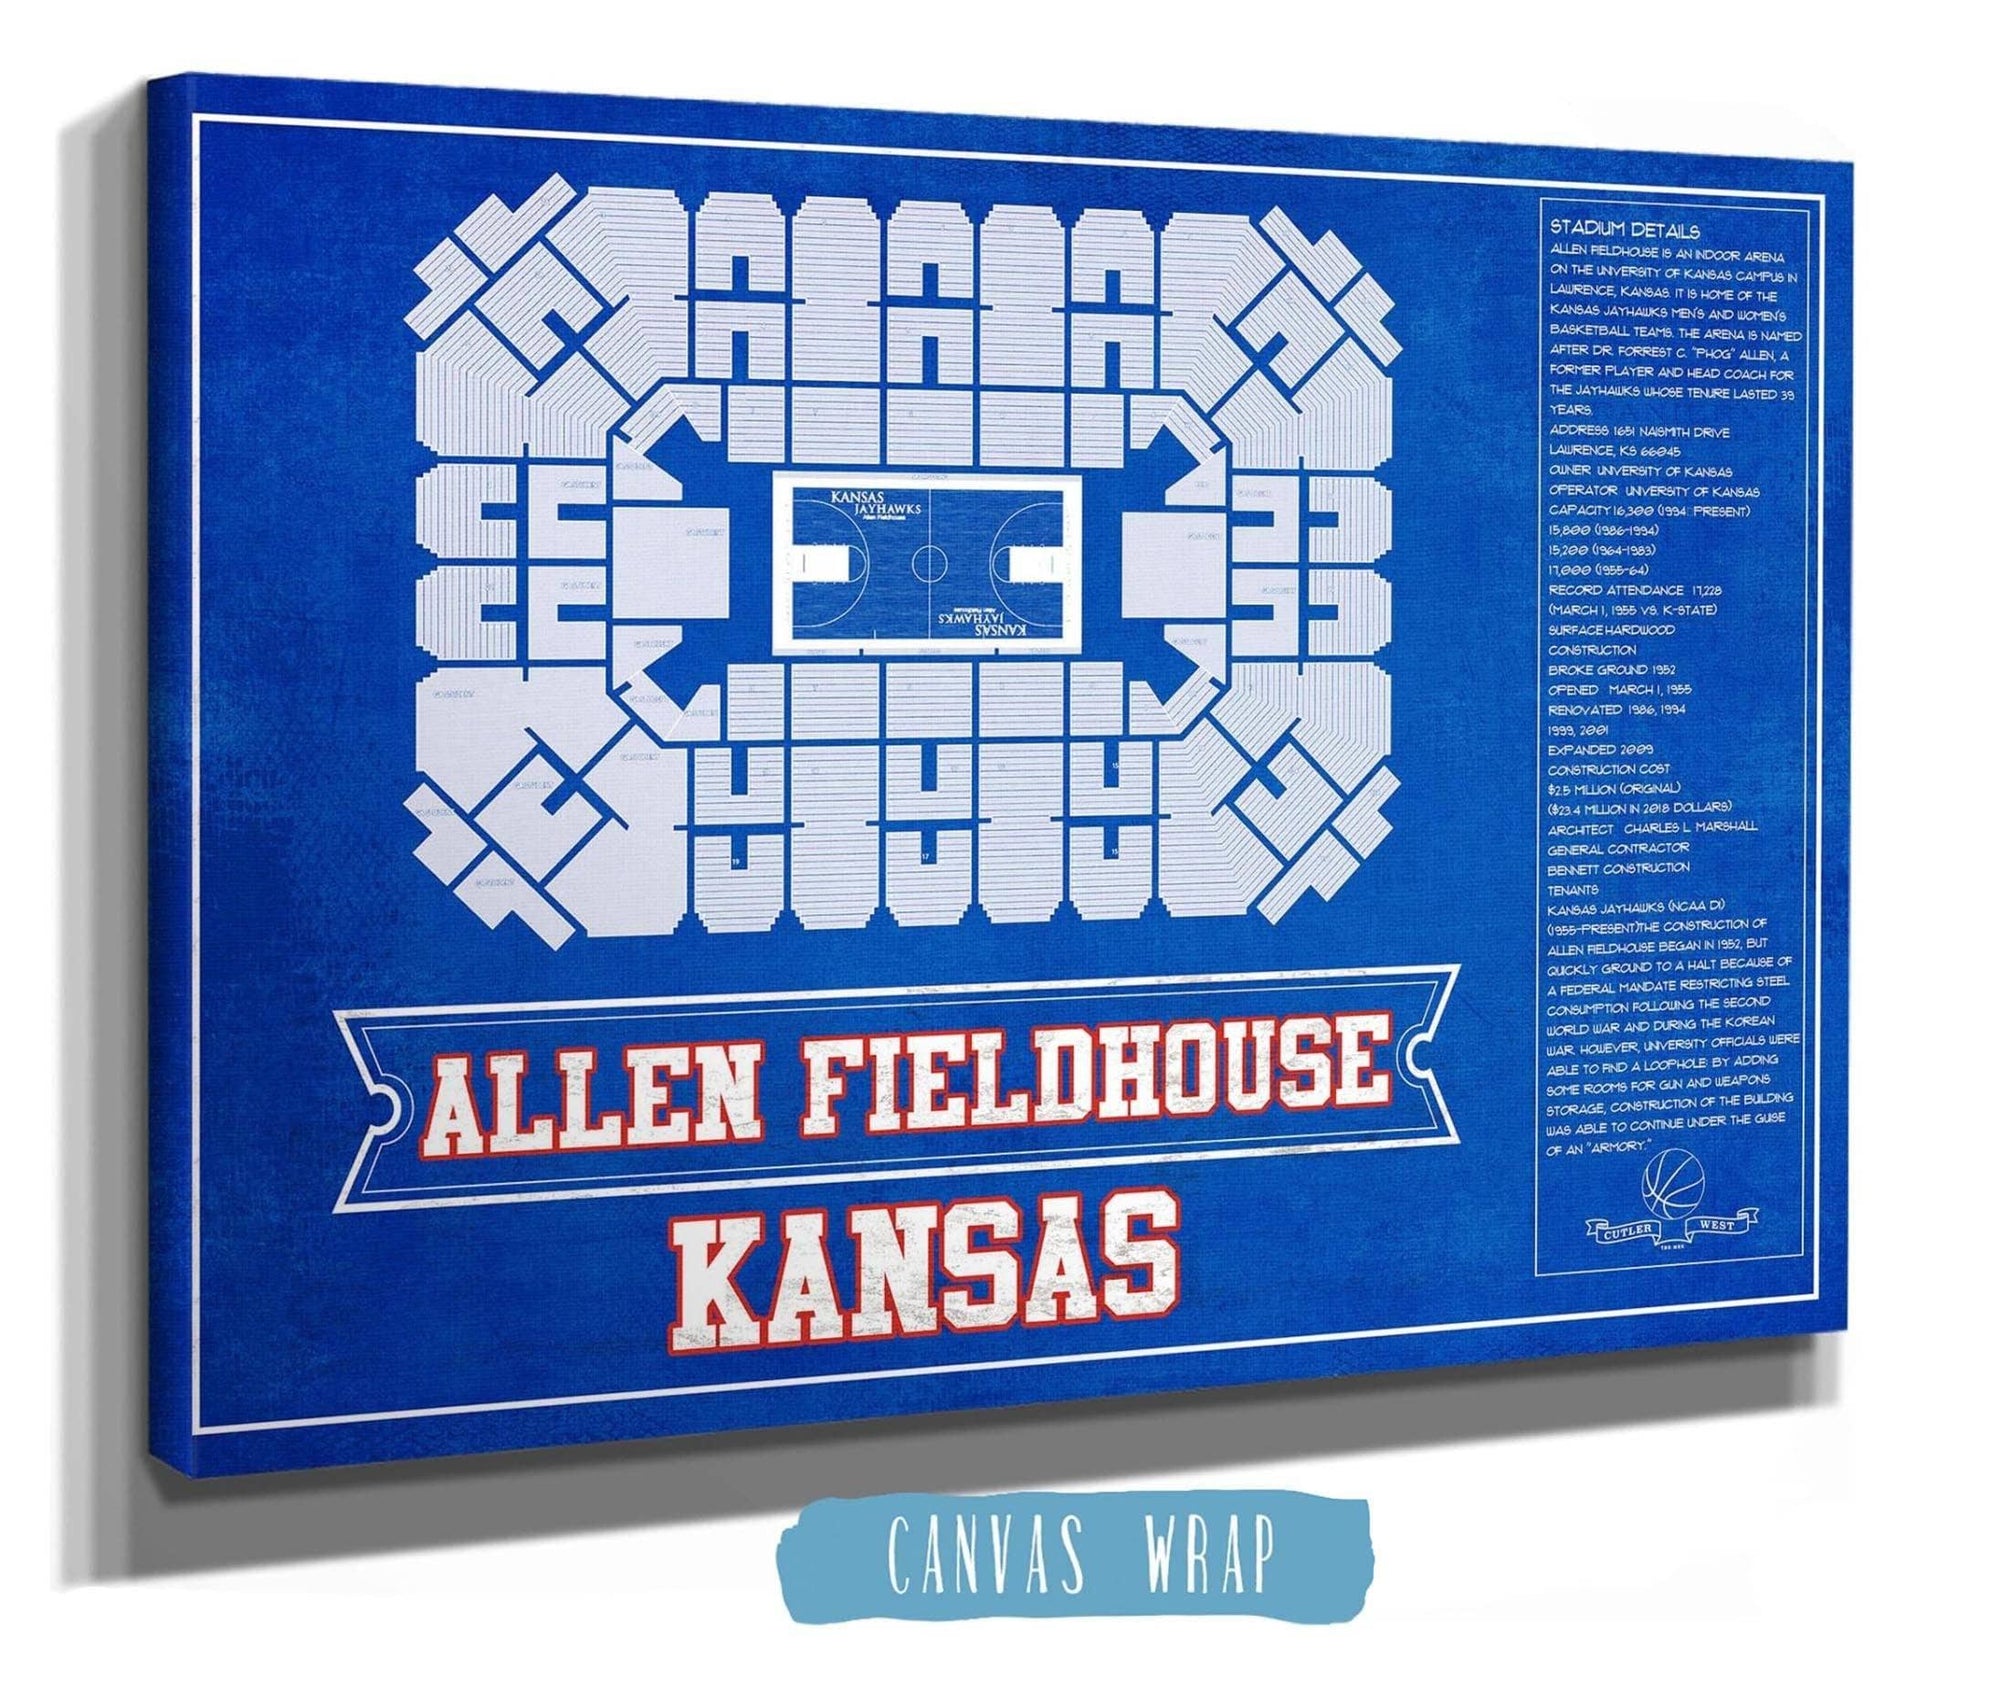 Cutler West Basketball Collection Kansas Jayhawks - Allen Fieldhouse Seating Chart - College Basketball Blueprint Team Color Art